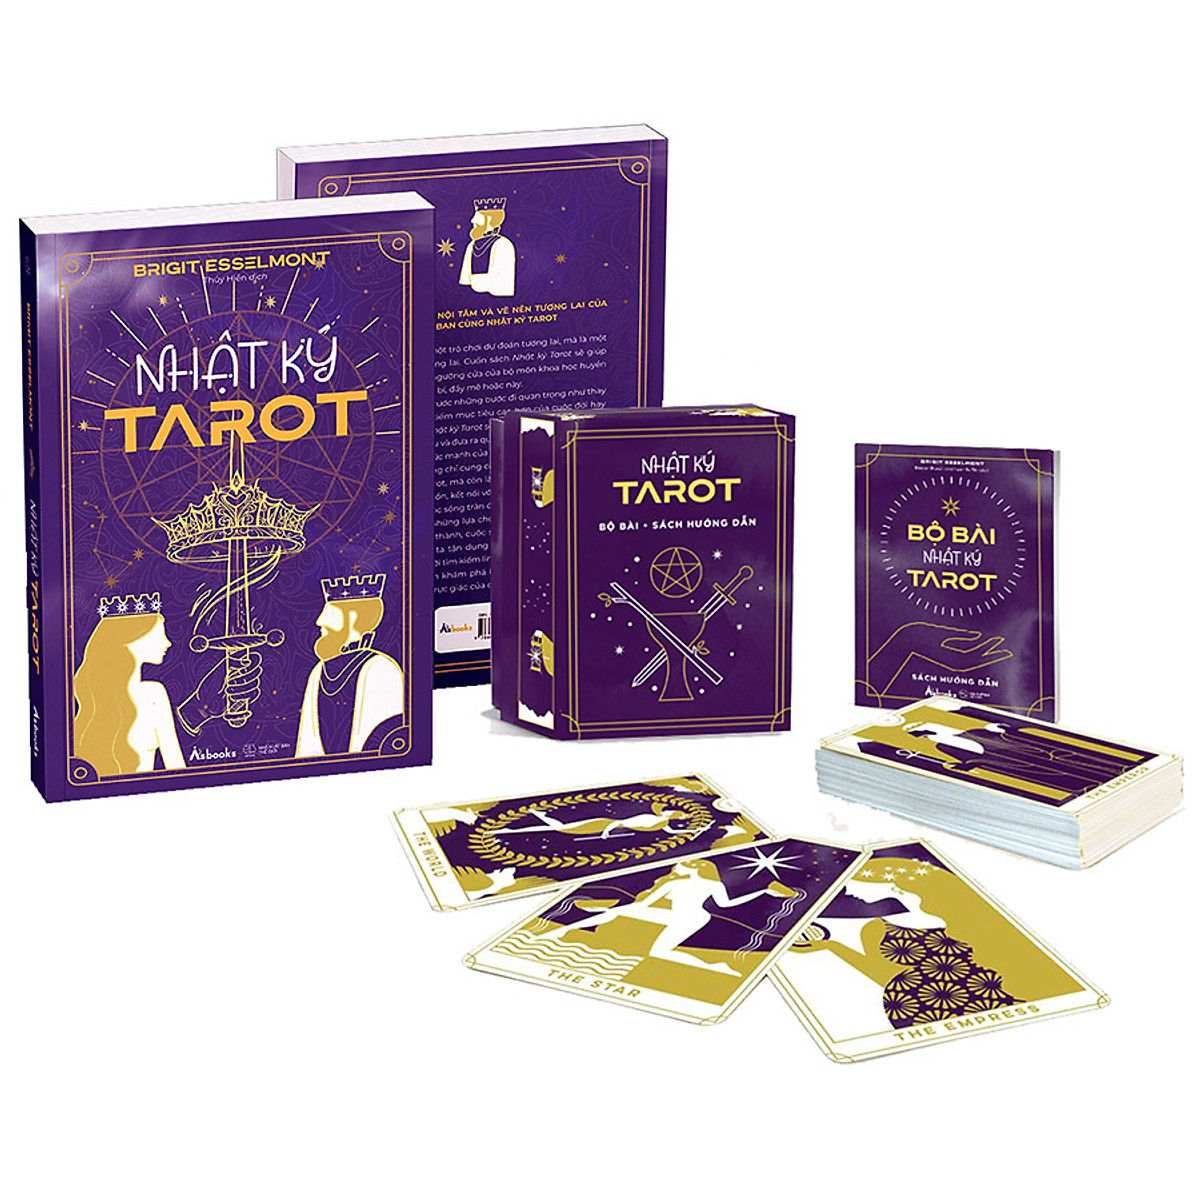 Mua Combo Tự Học Tarot: Sách Nhật Ký Tarot + Bộ Bài & Sách Hướng Dẫn tại Nhà Sách Trẻ Online